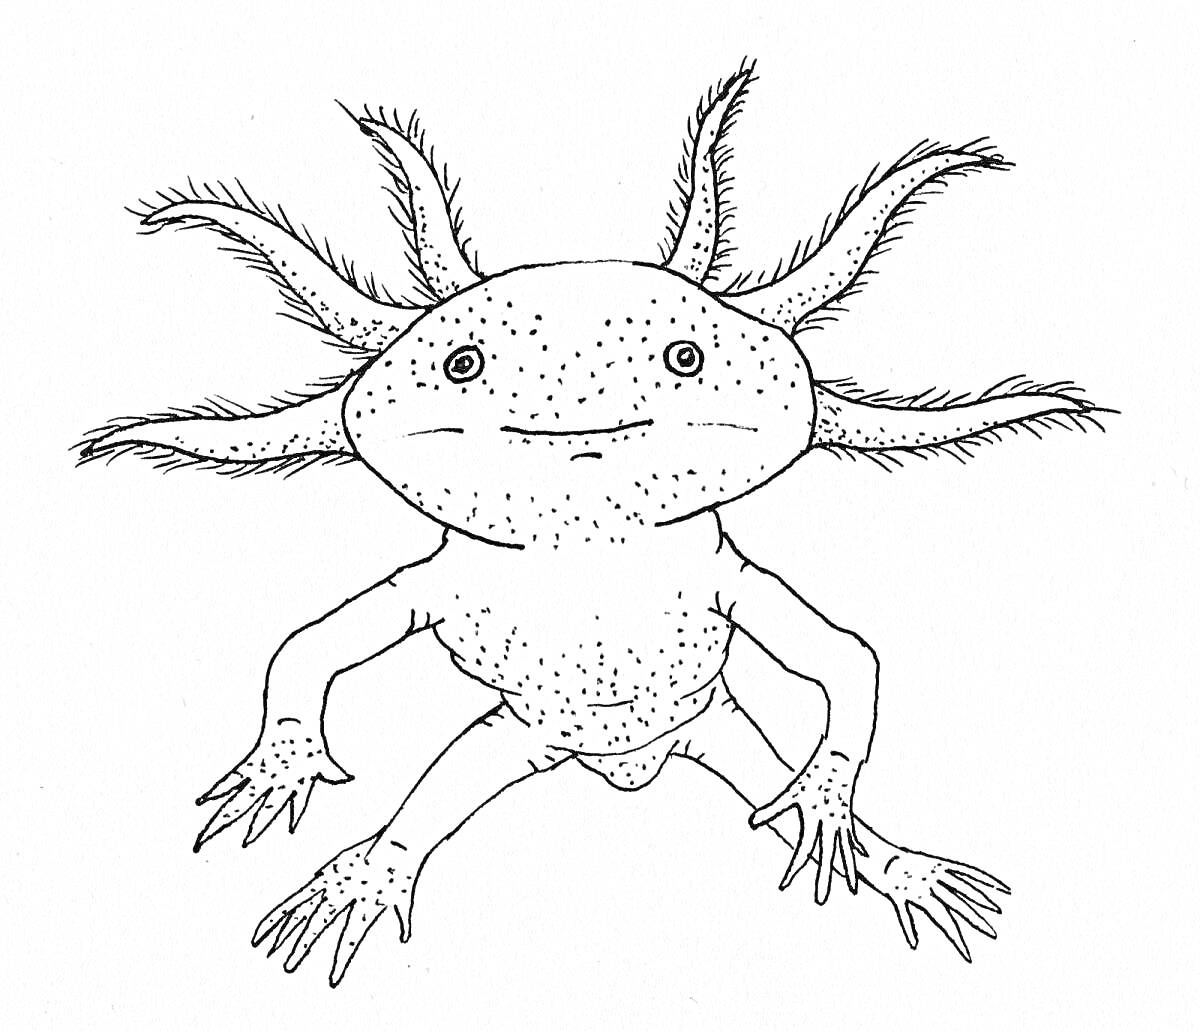 аксолотль с шестью внешними жабрами, два глаза, улыбка, и четыре лапы